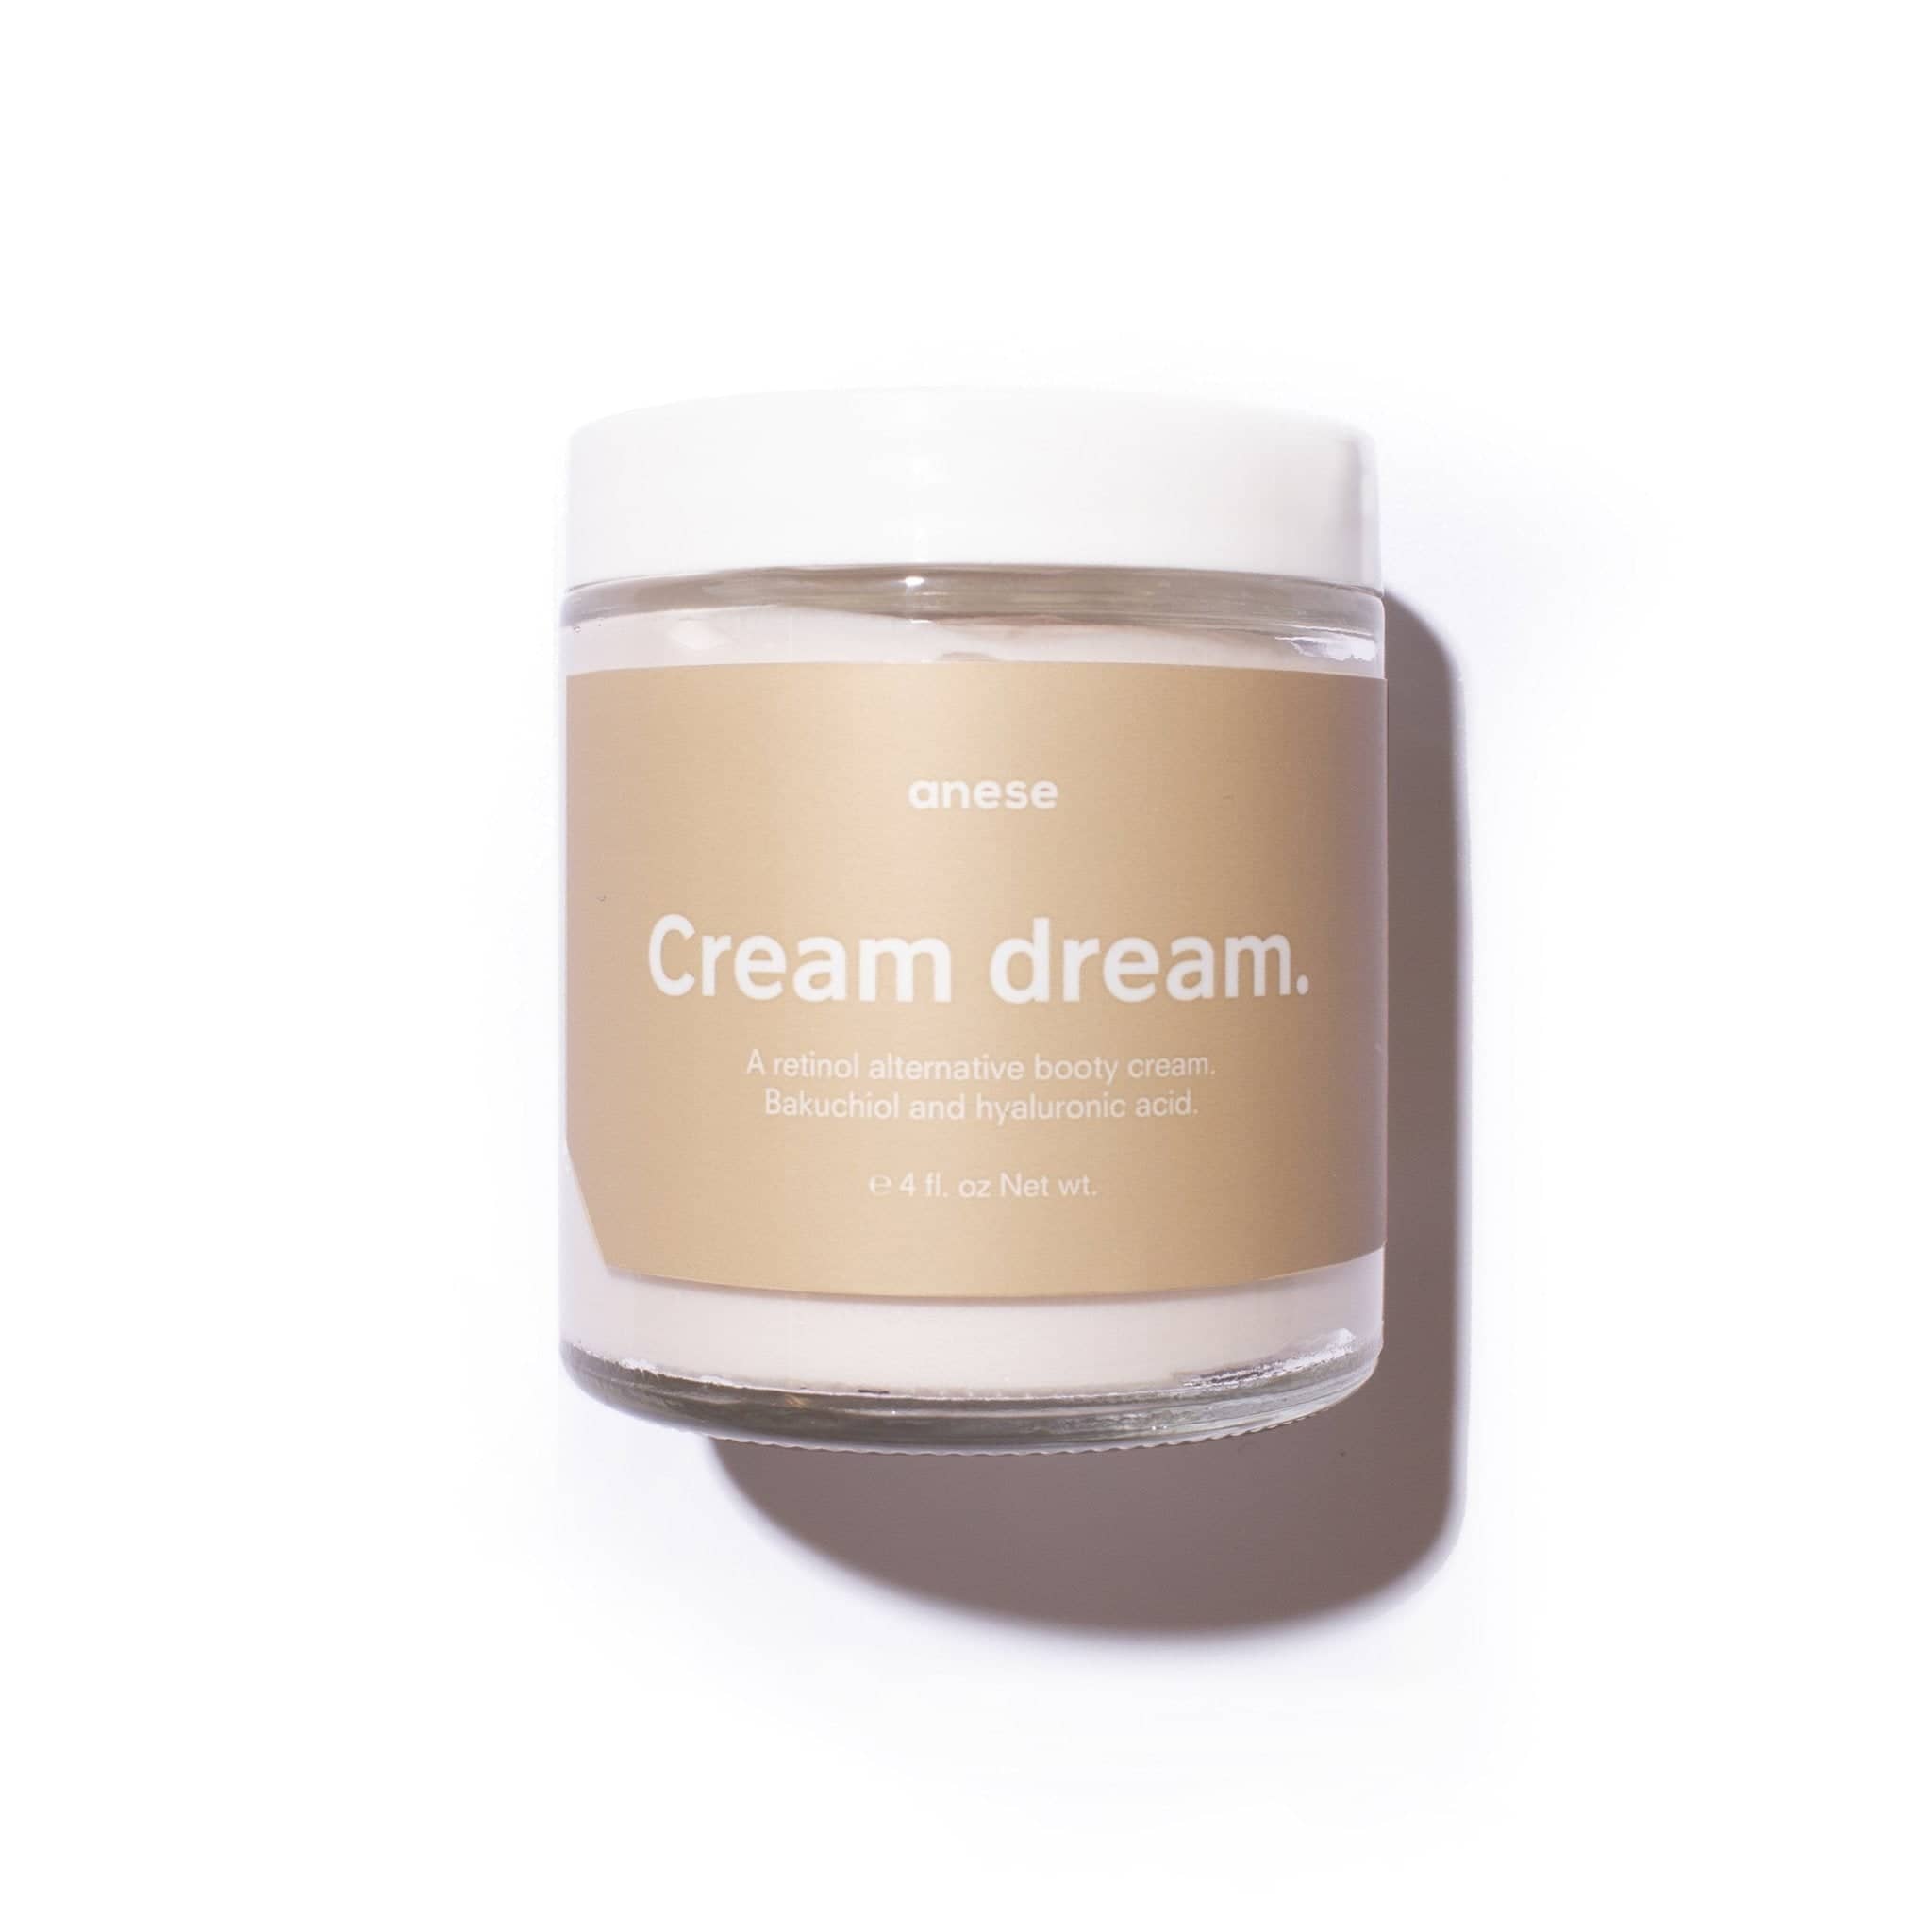 Image of Cream dream.